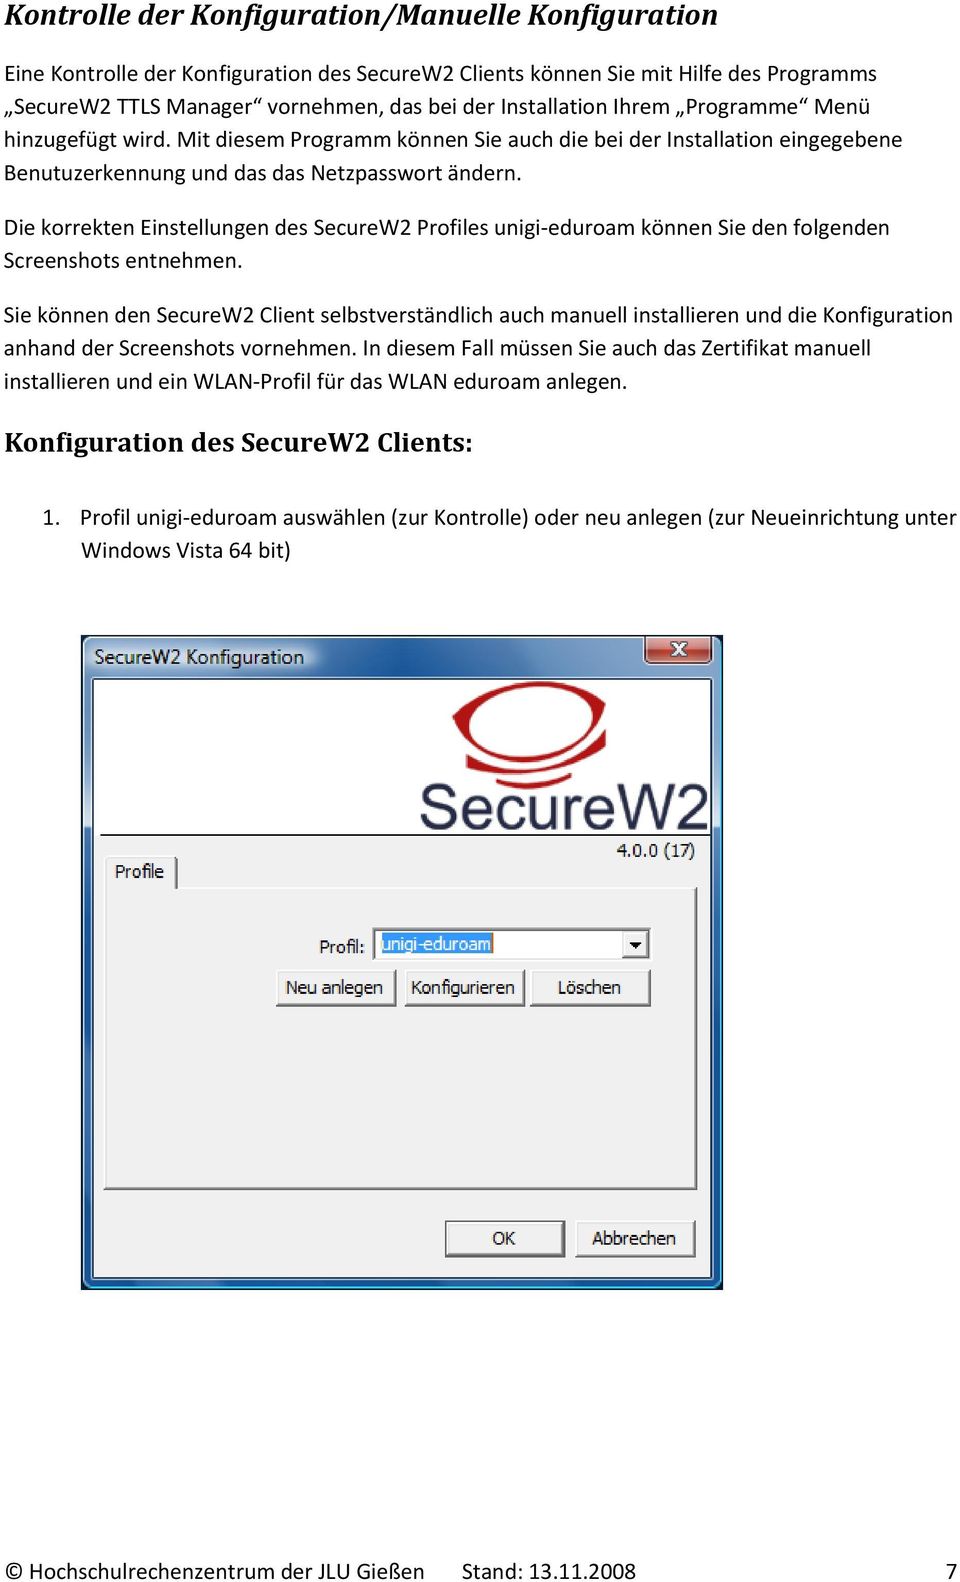 Die korrekten Einstellungen des SecureW2 Profiles unigi eduroam können Sie den folgenden Screenshots entnehmen.